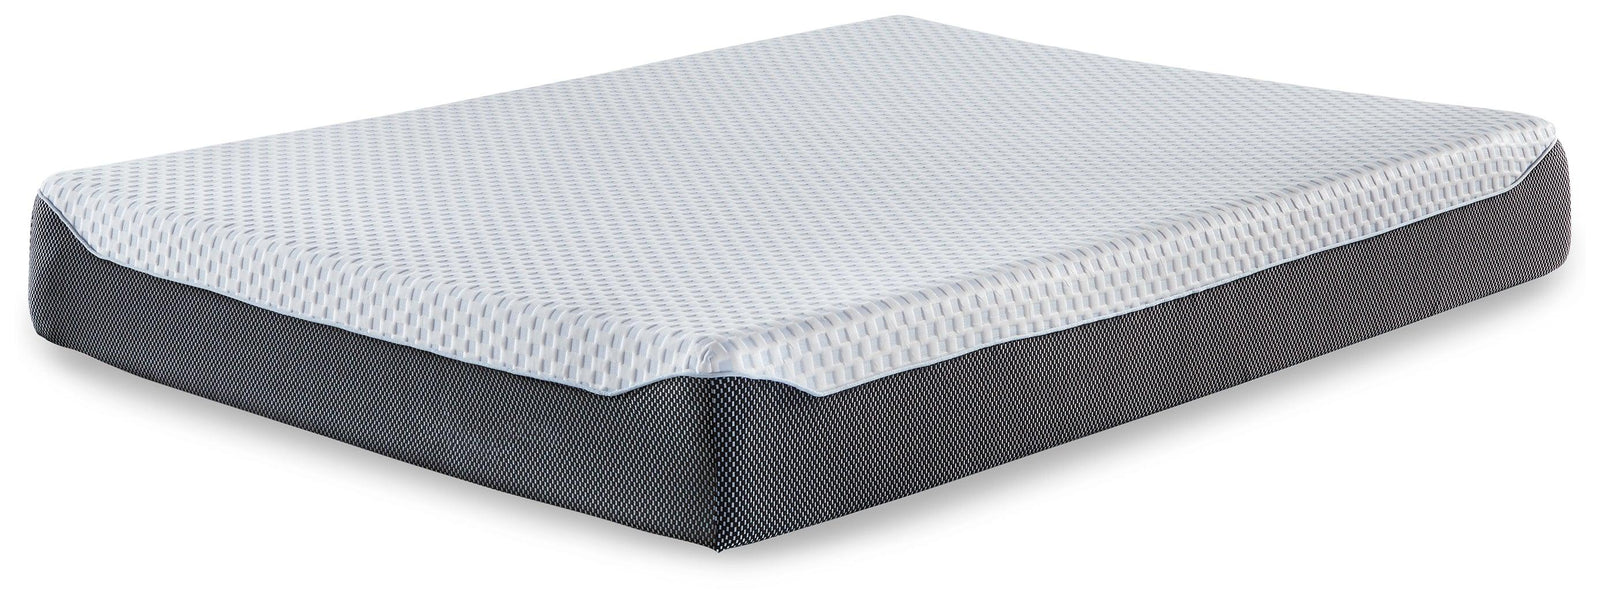 10 Inch Chime Elite White/blue Queen Memory Foam Mattress In A Box - Ella Furniture